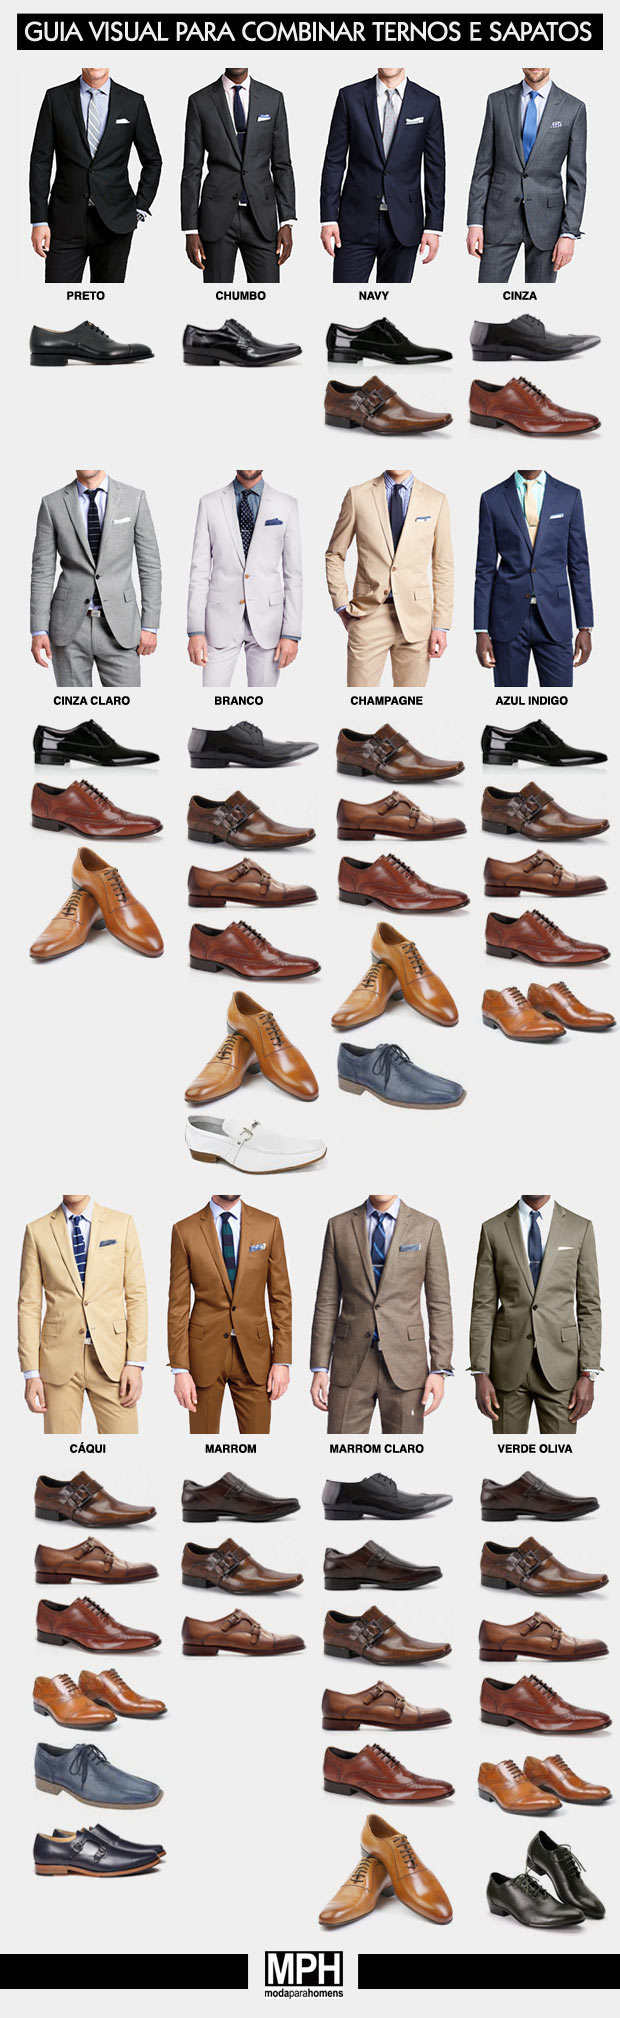 Guia visual para combinar ternos e sapatos